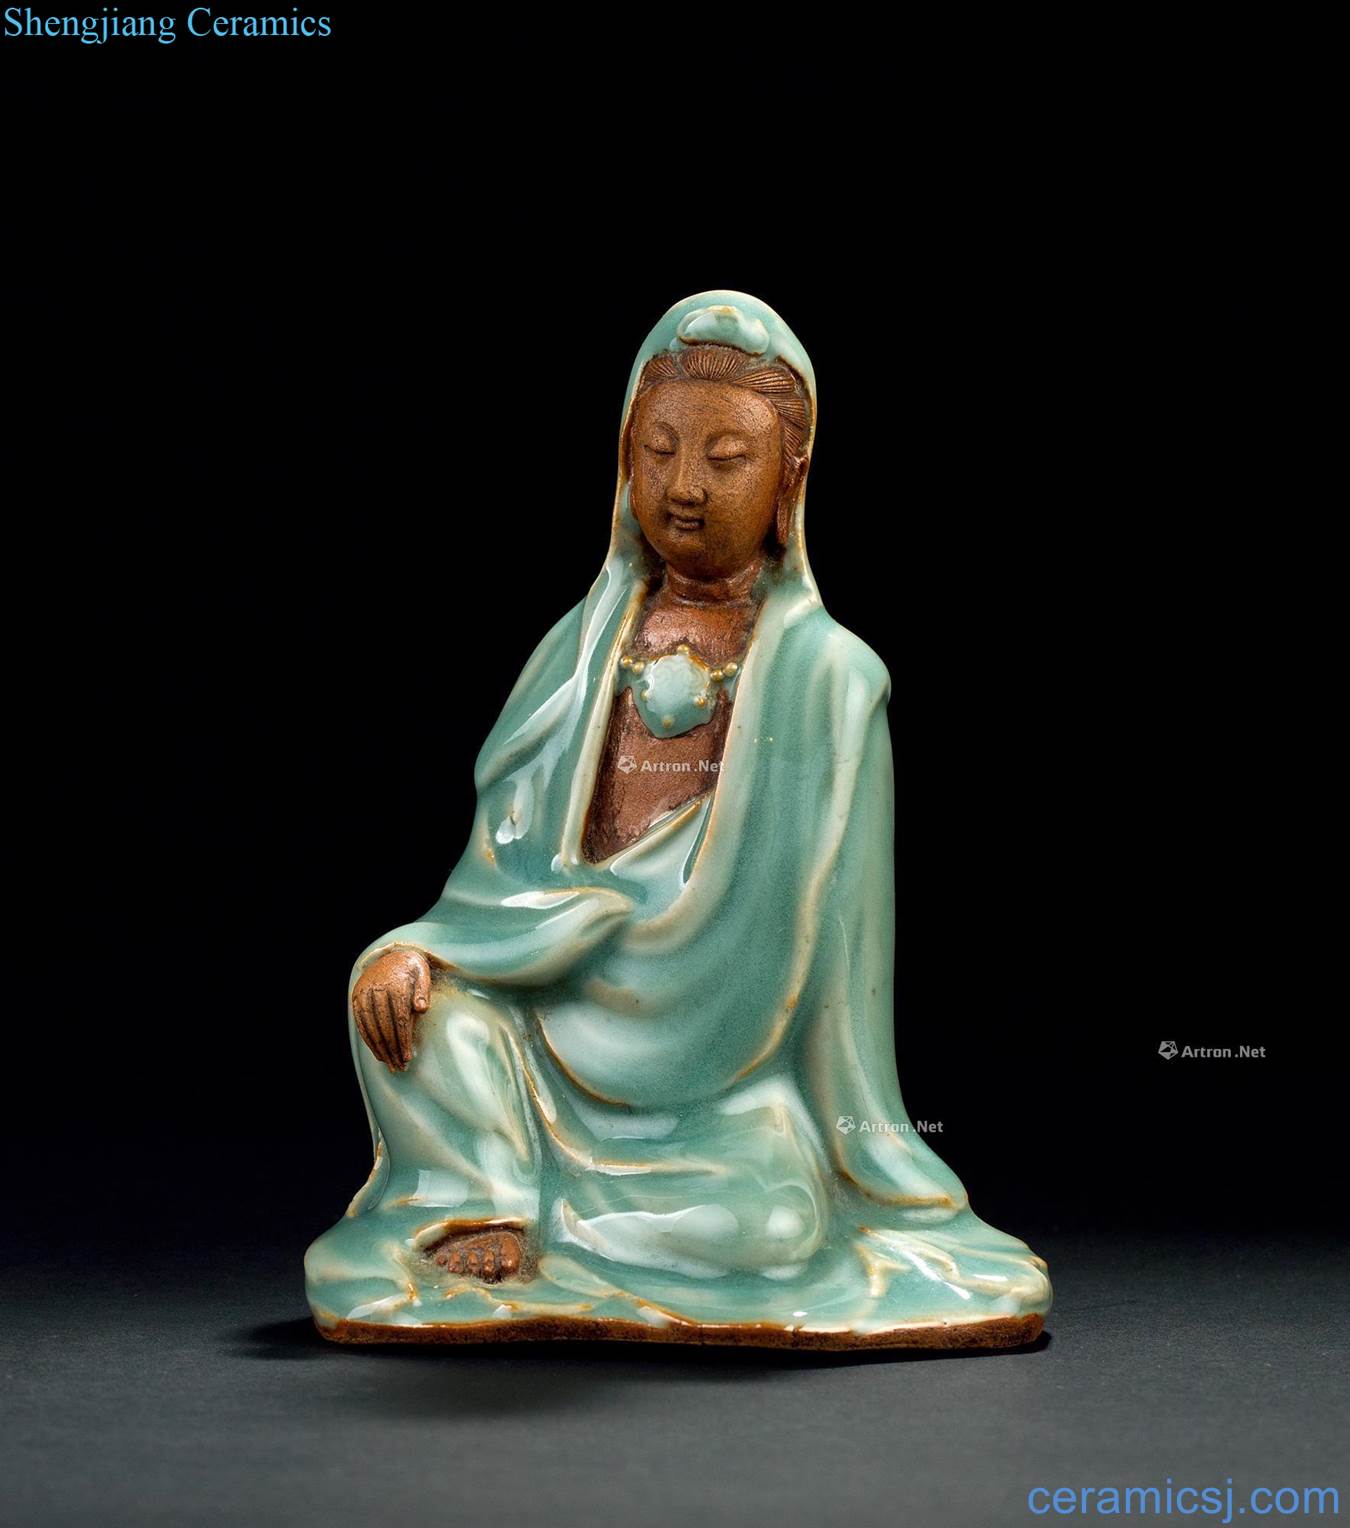 In the Ming dynasty (1368-1644) like longquan celadon guan Yin